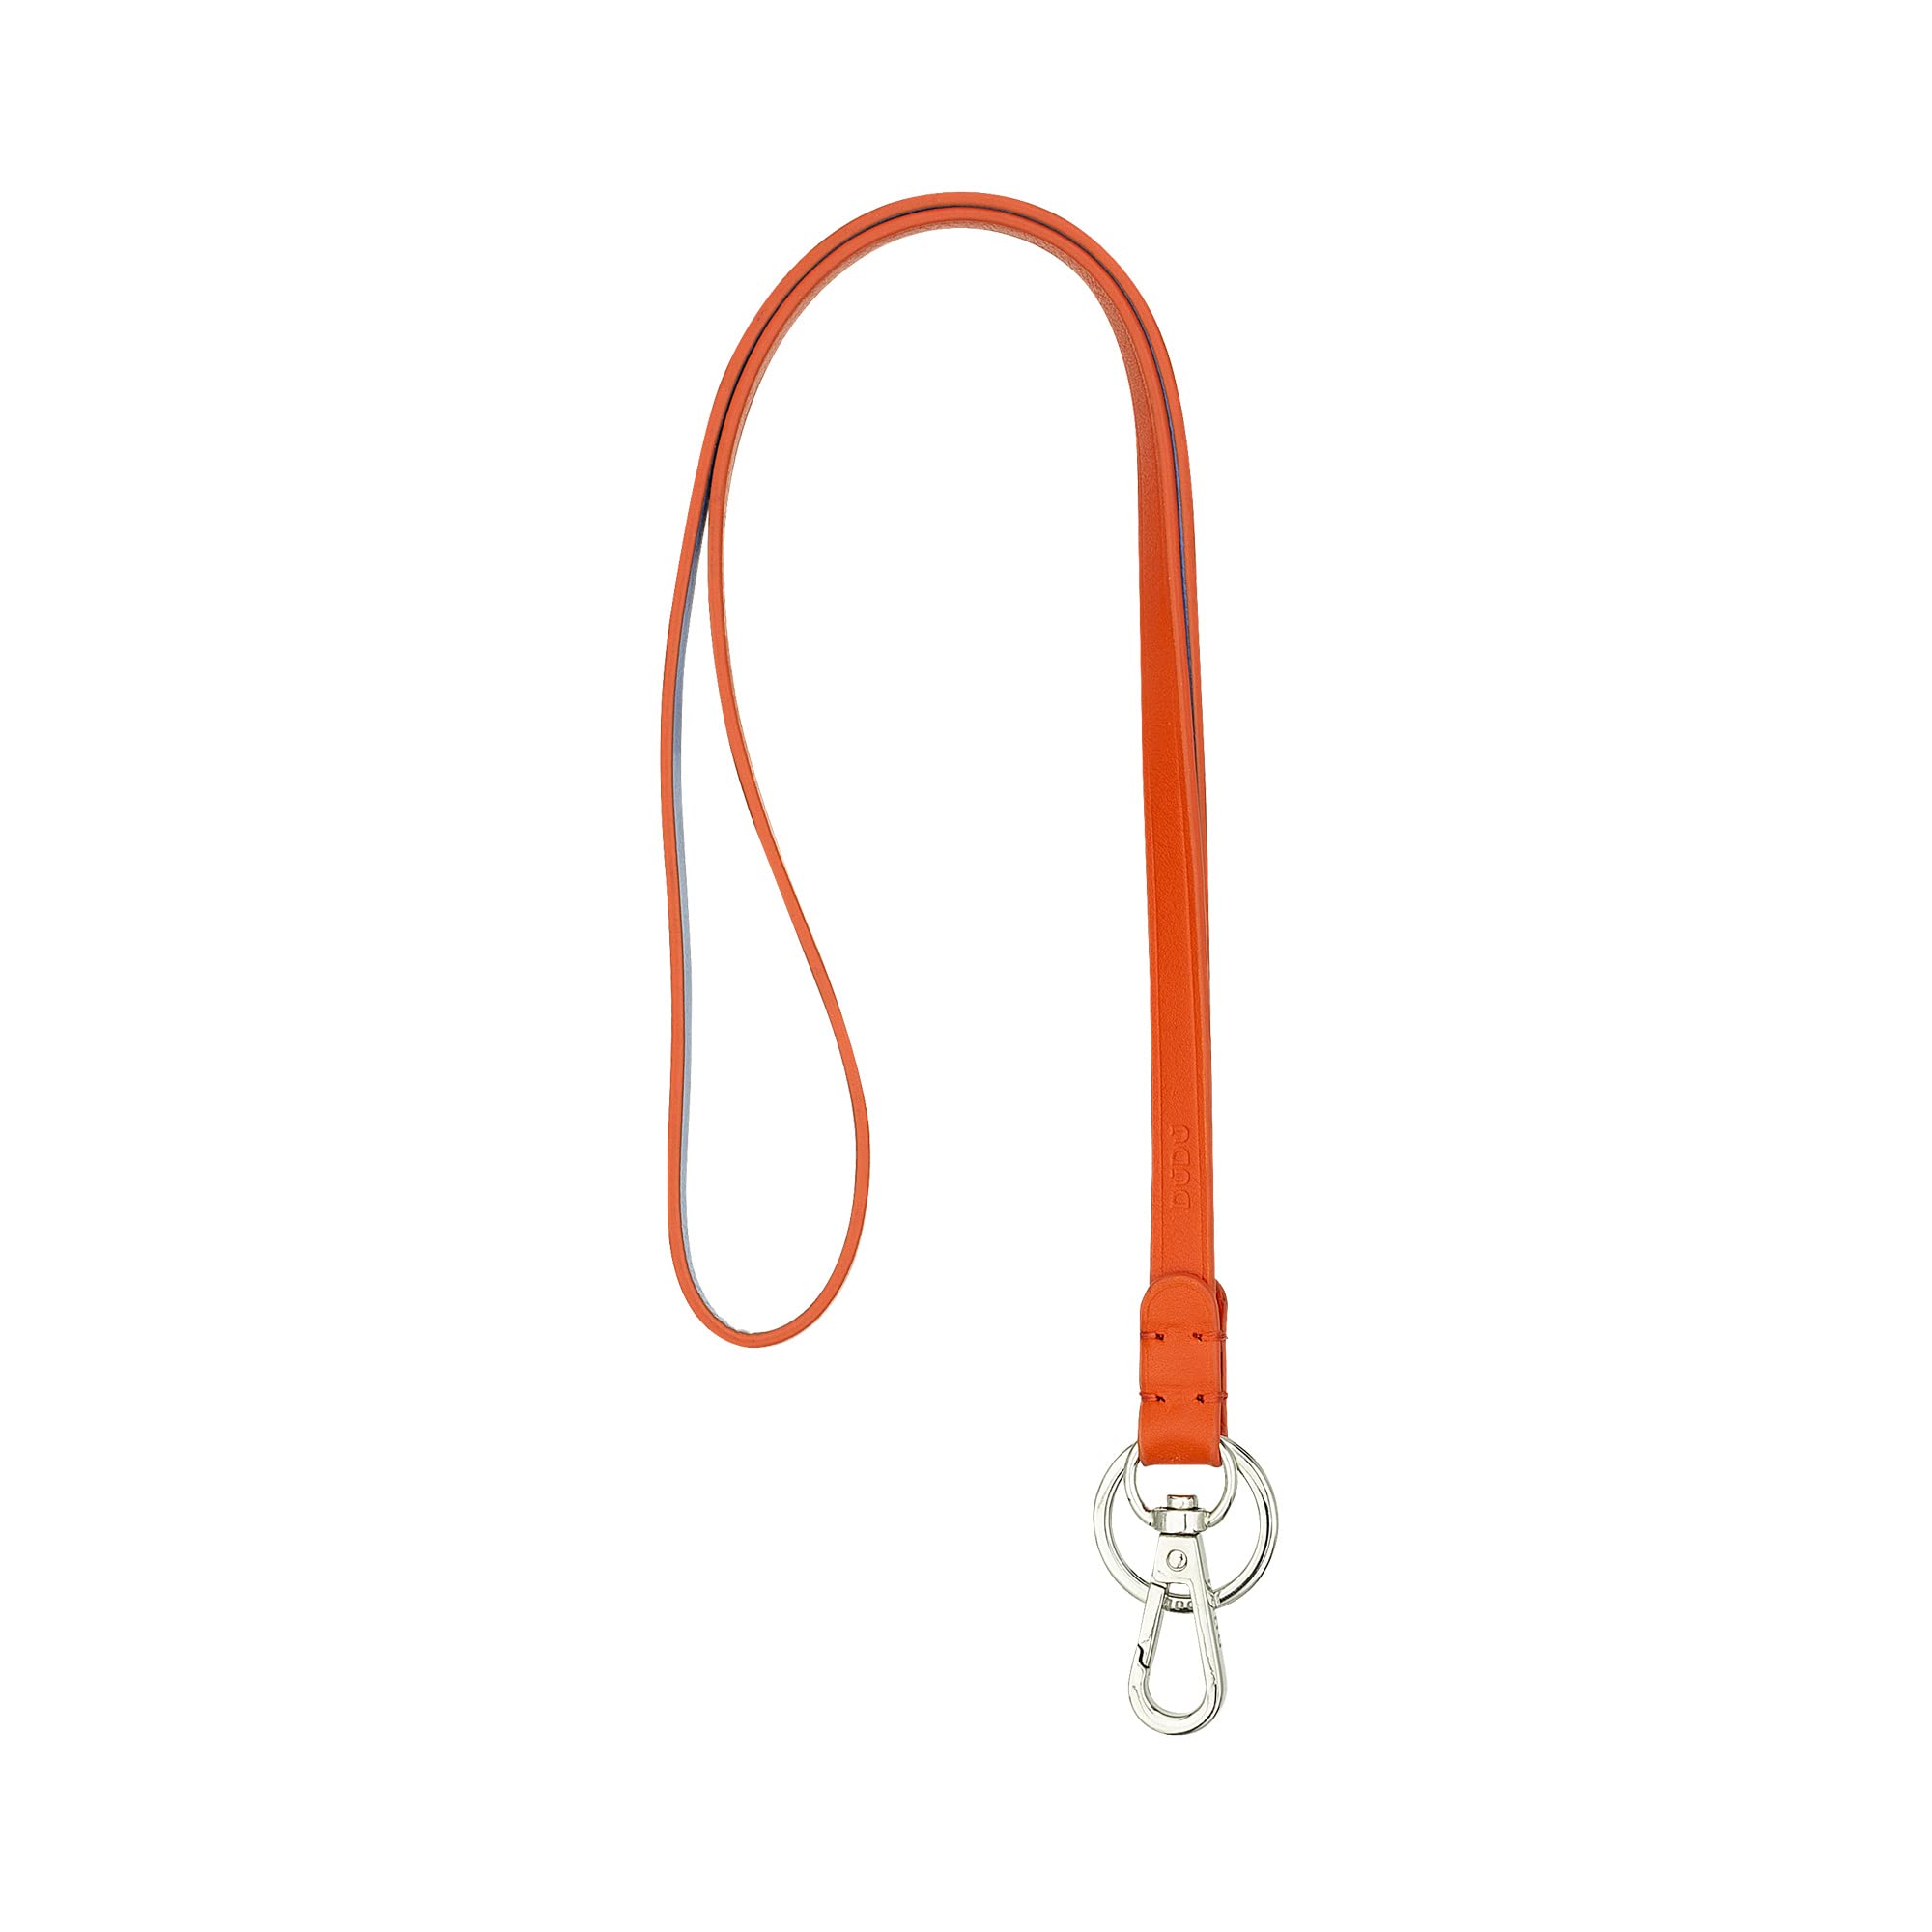 DUDU Schlüsselbund aus Echt Leder mit Metallring und Karabinerhaken, Schlüsselband für Schlüssel, Ausweishülle, Auto, Schlüsselanhänger Orange